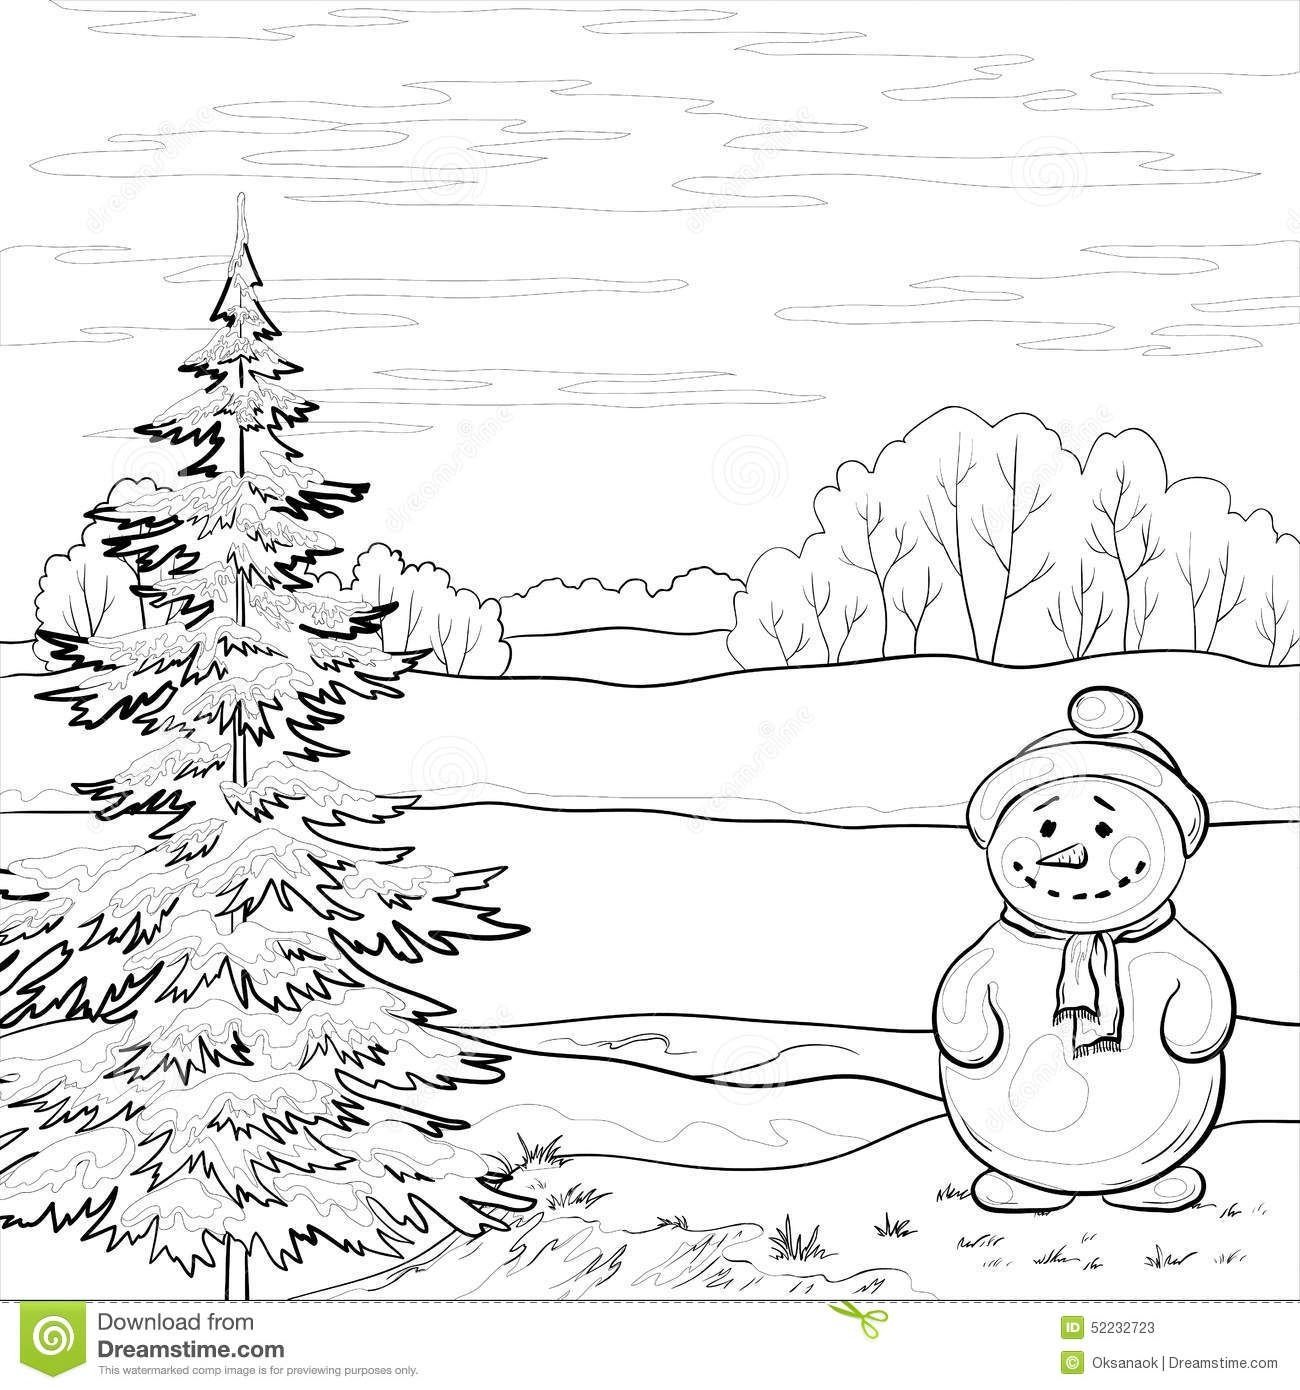 Эскиз рисунка на тему зима